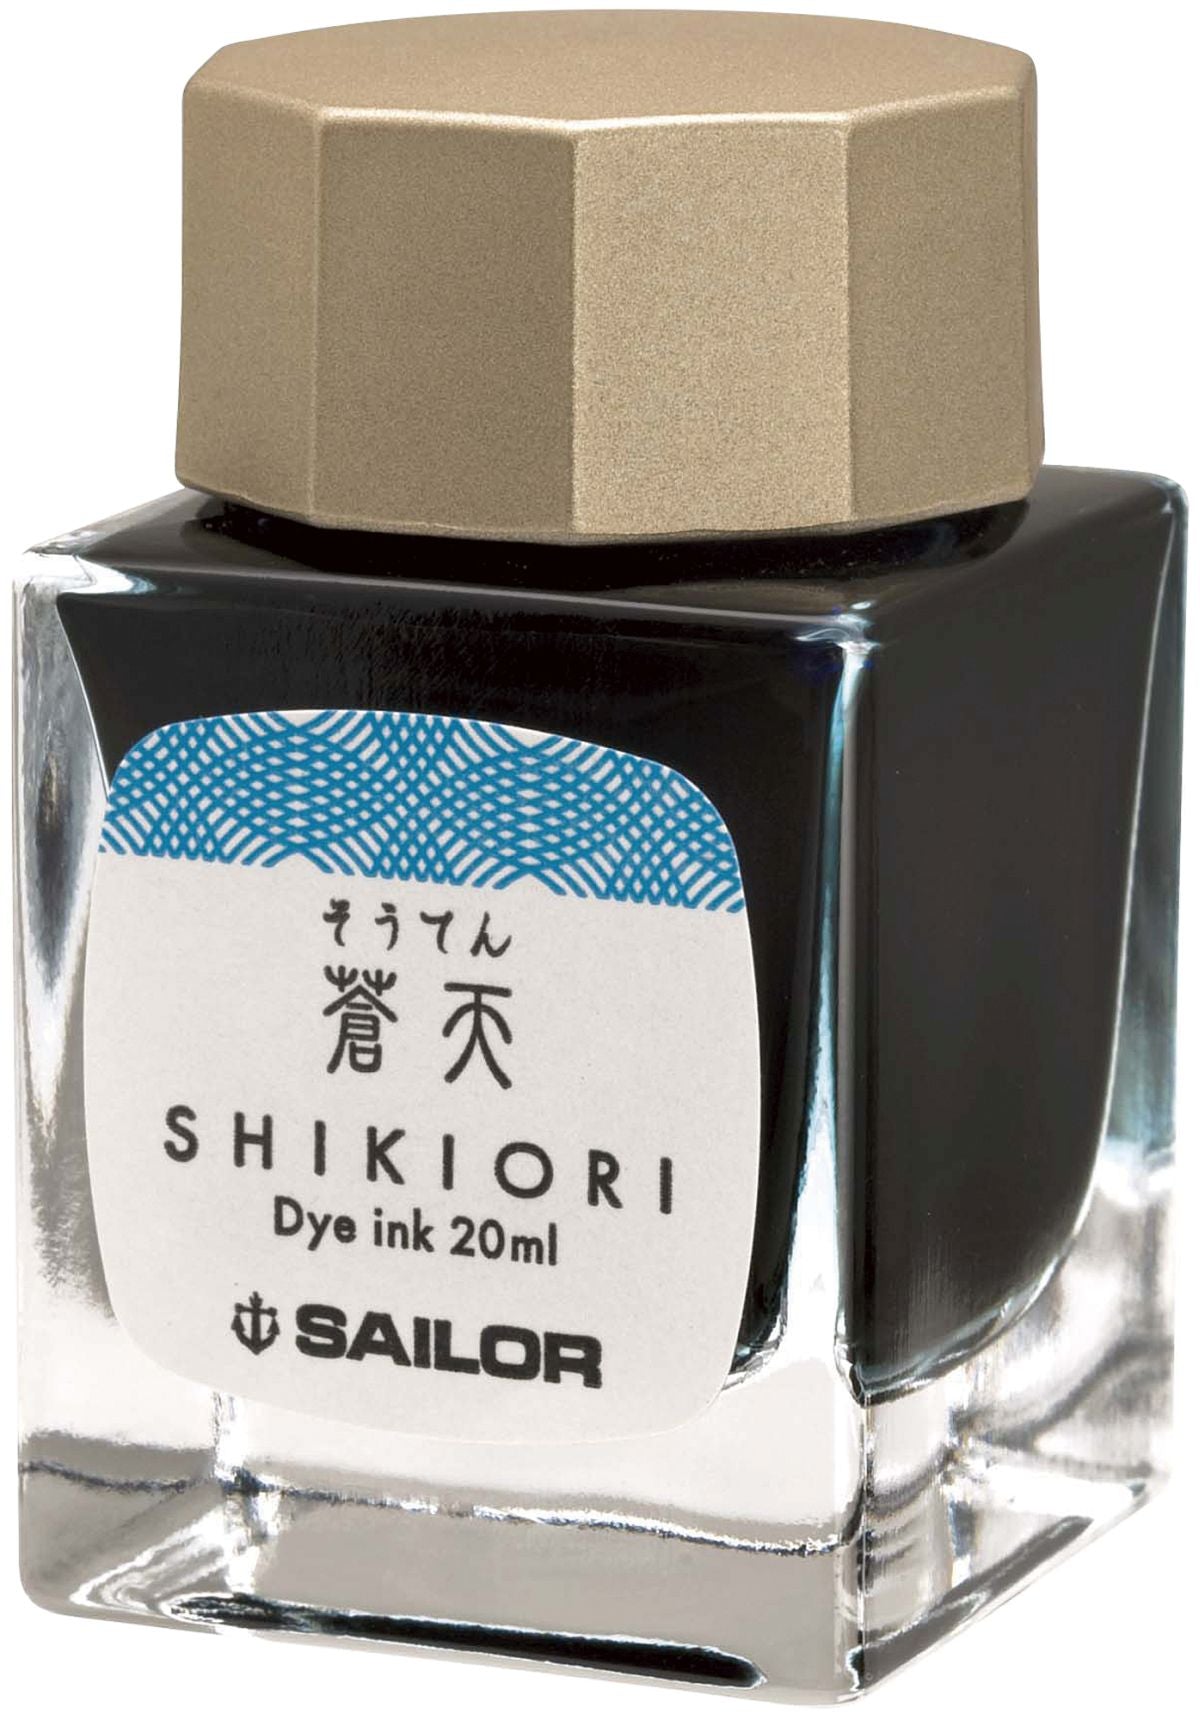 Sailor jentle ink - Souten (light blue)